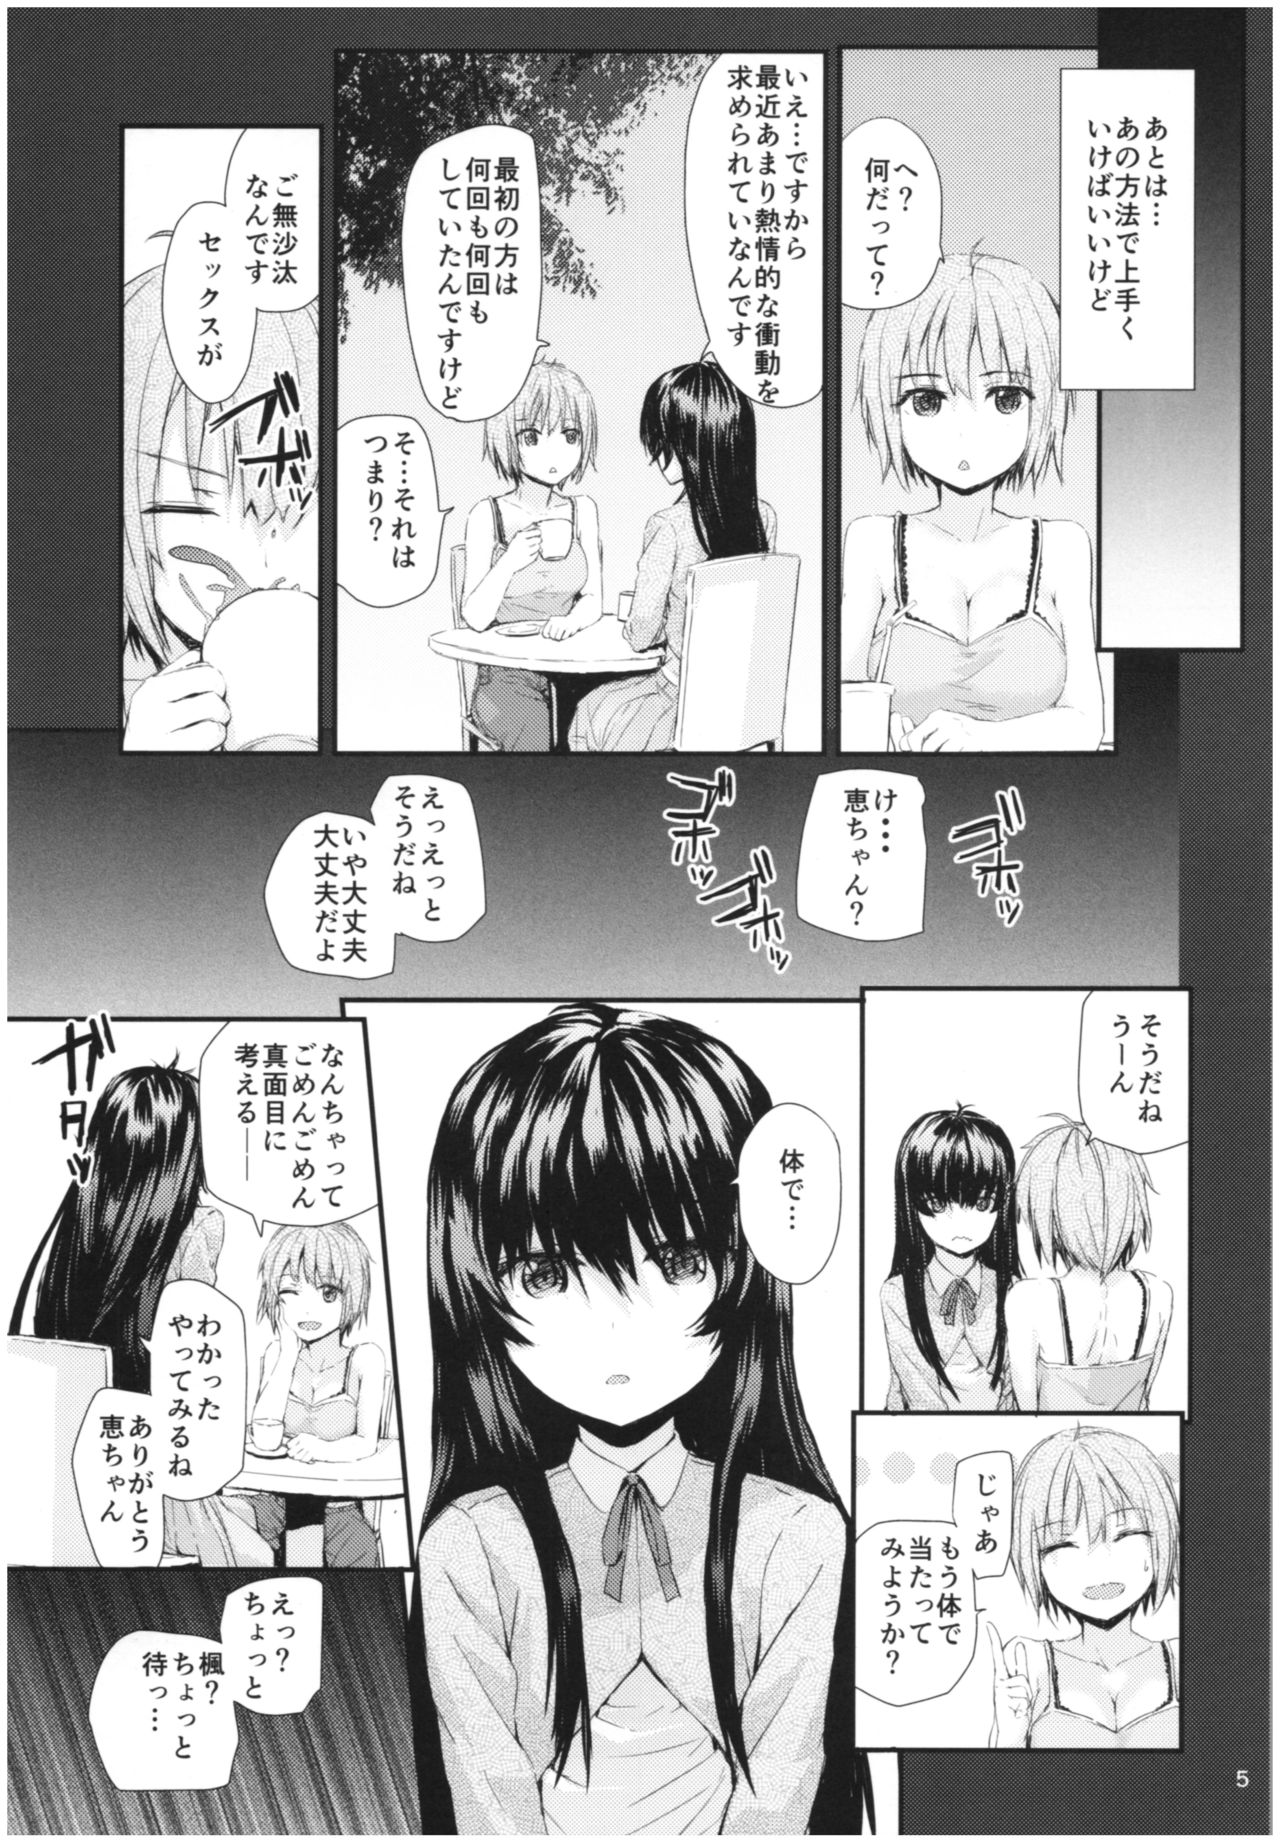 (C86) [furuike (Sumiya)] Sentence Girl Another Short (C86) [furuike (スミヤ)] センテンス･ガール・アナザー･ショート